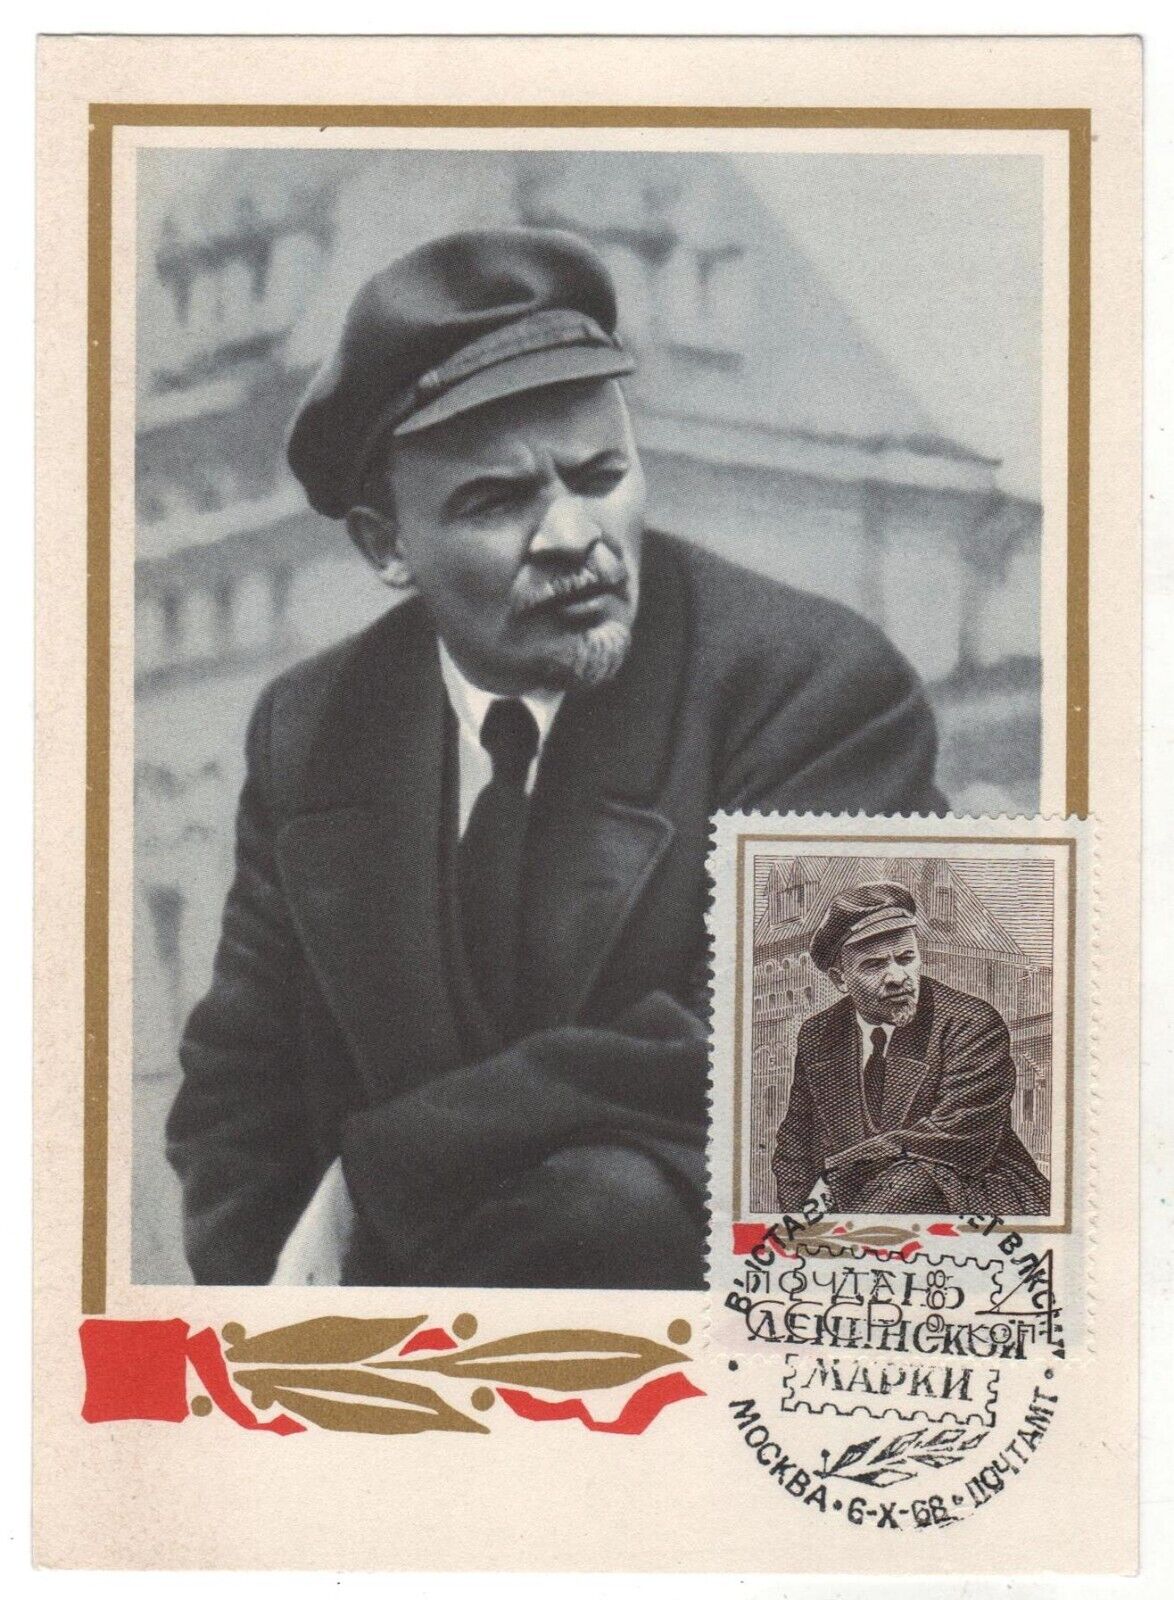 1968 LENIN Leader October Revolution Soviet Propaganda OLD Russia Postcard STAMP